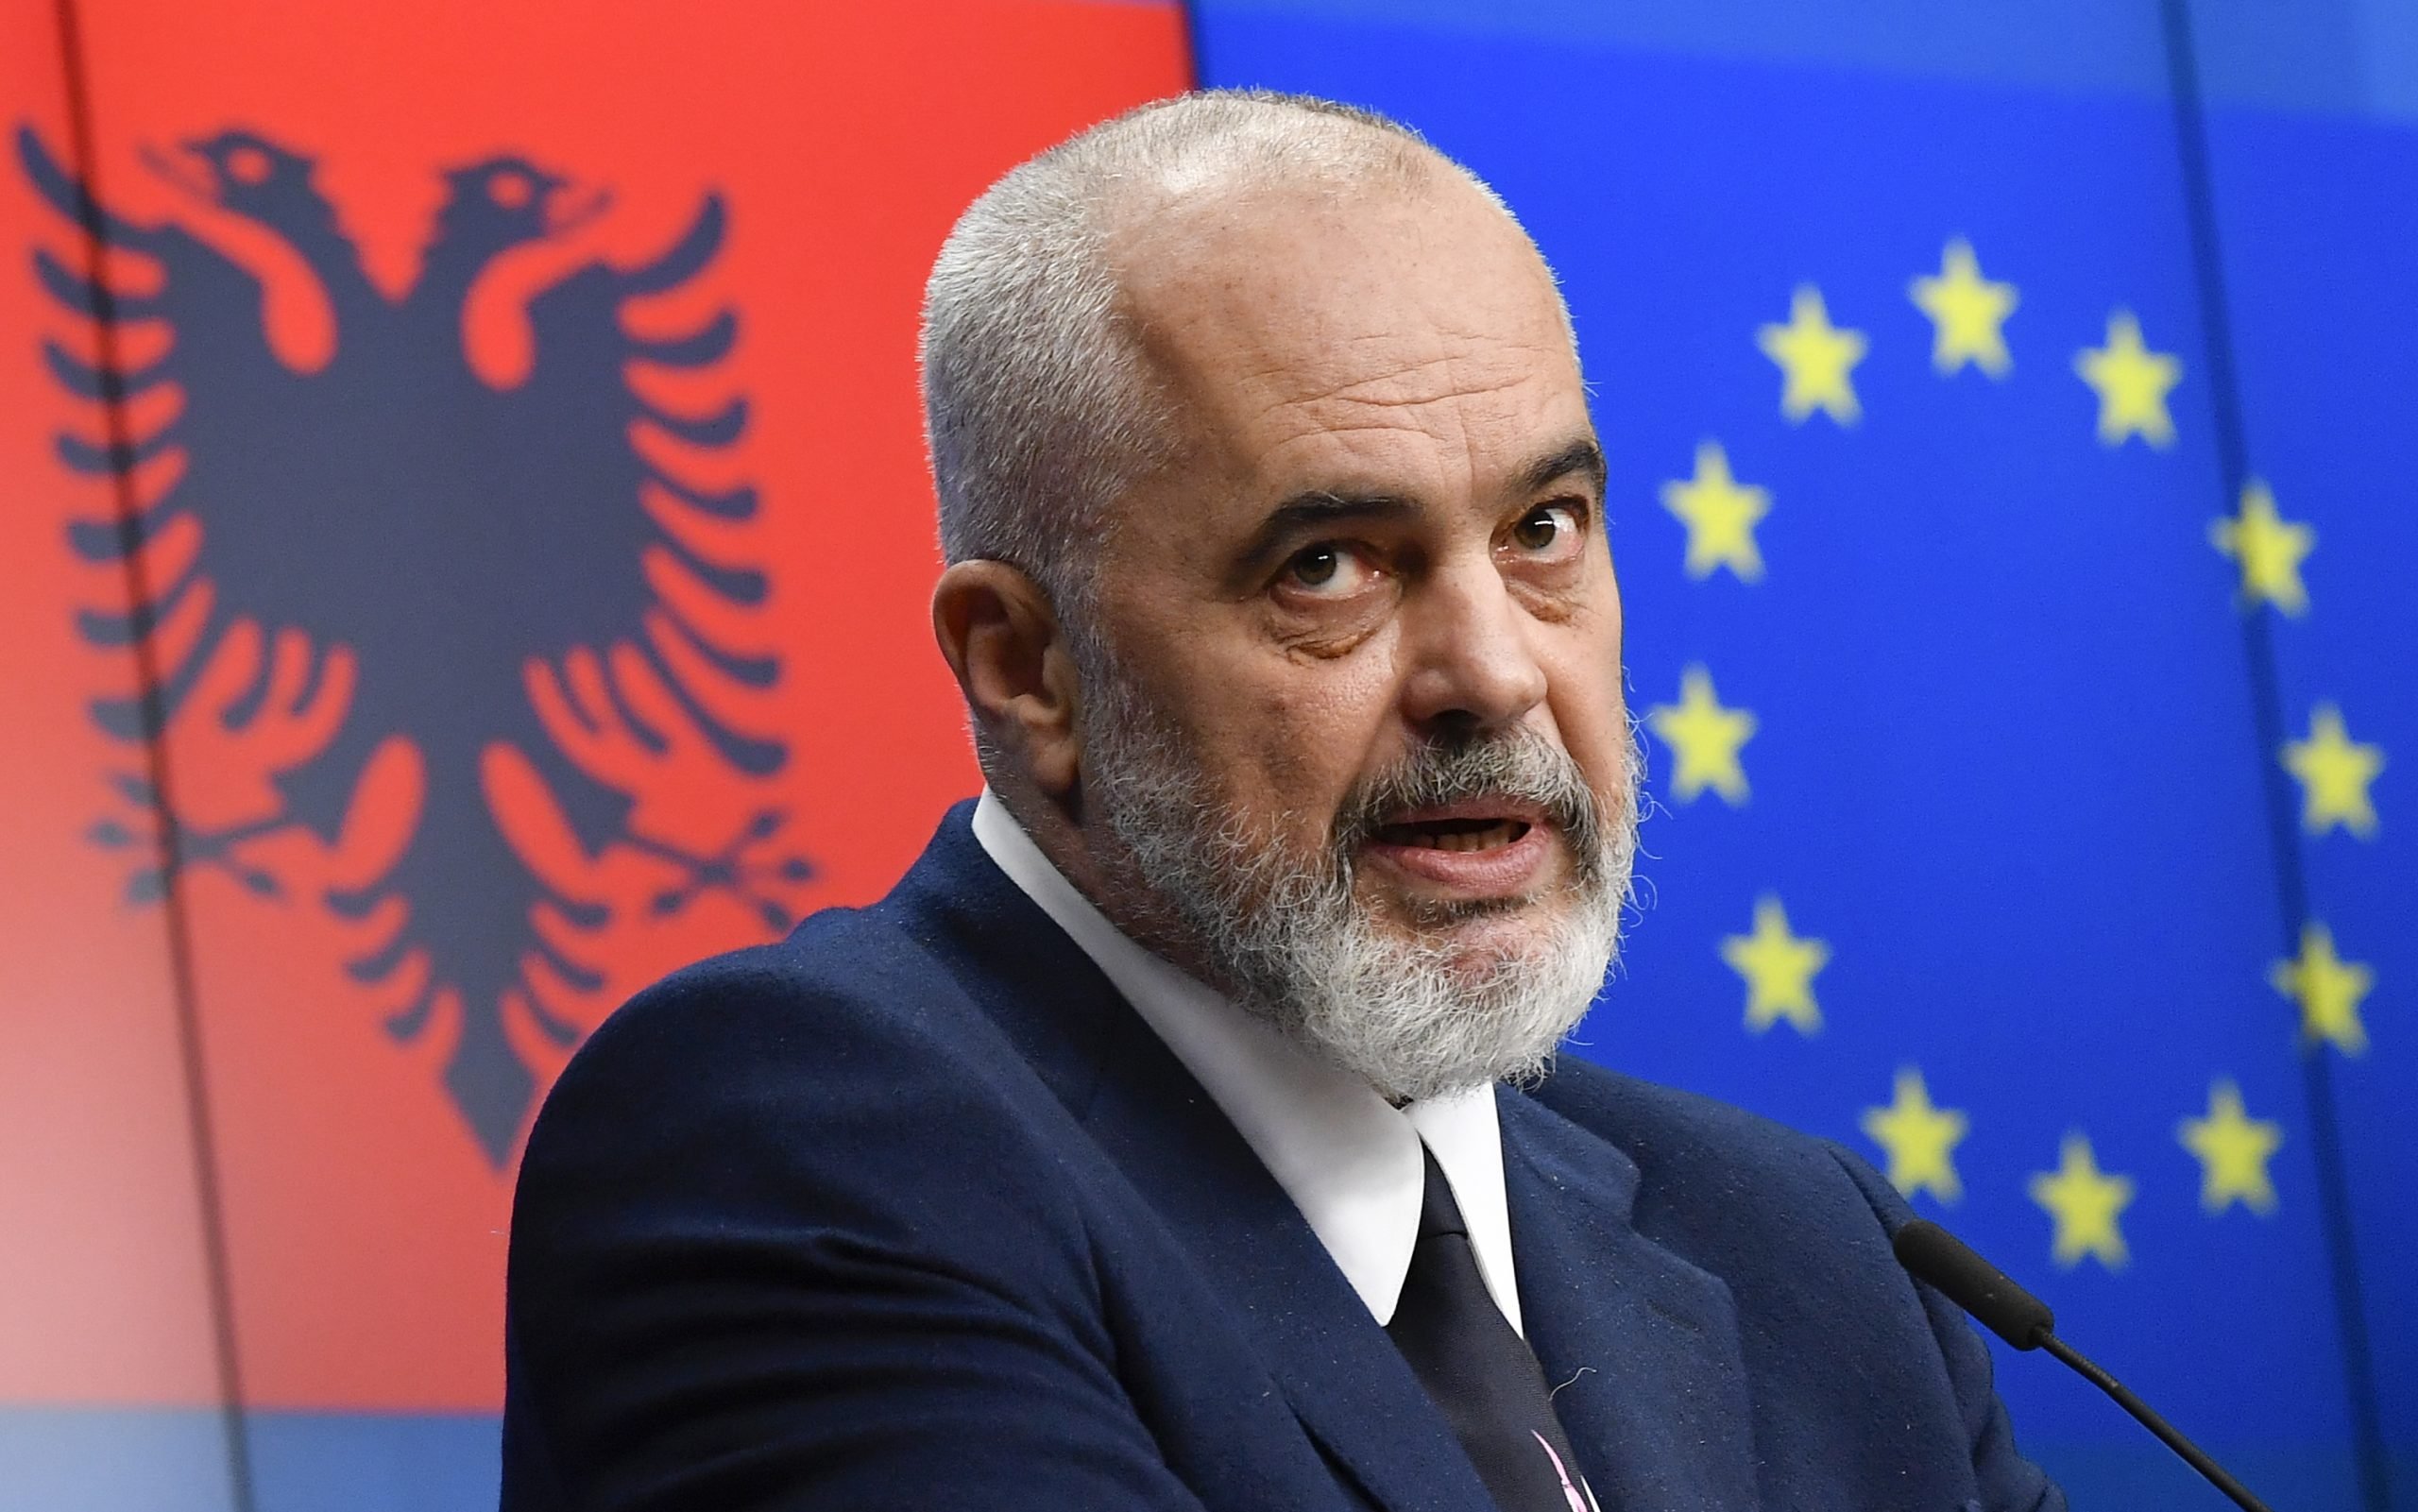 Albania PM Edi Rama